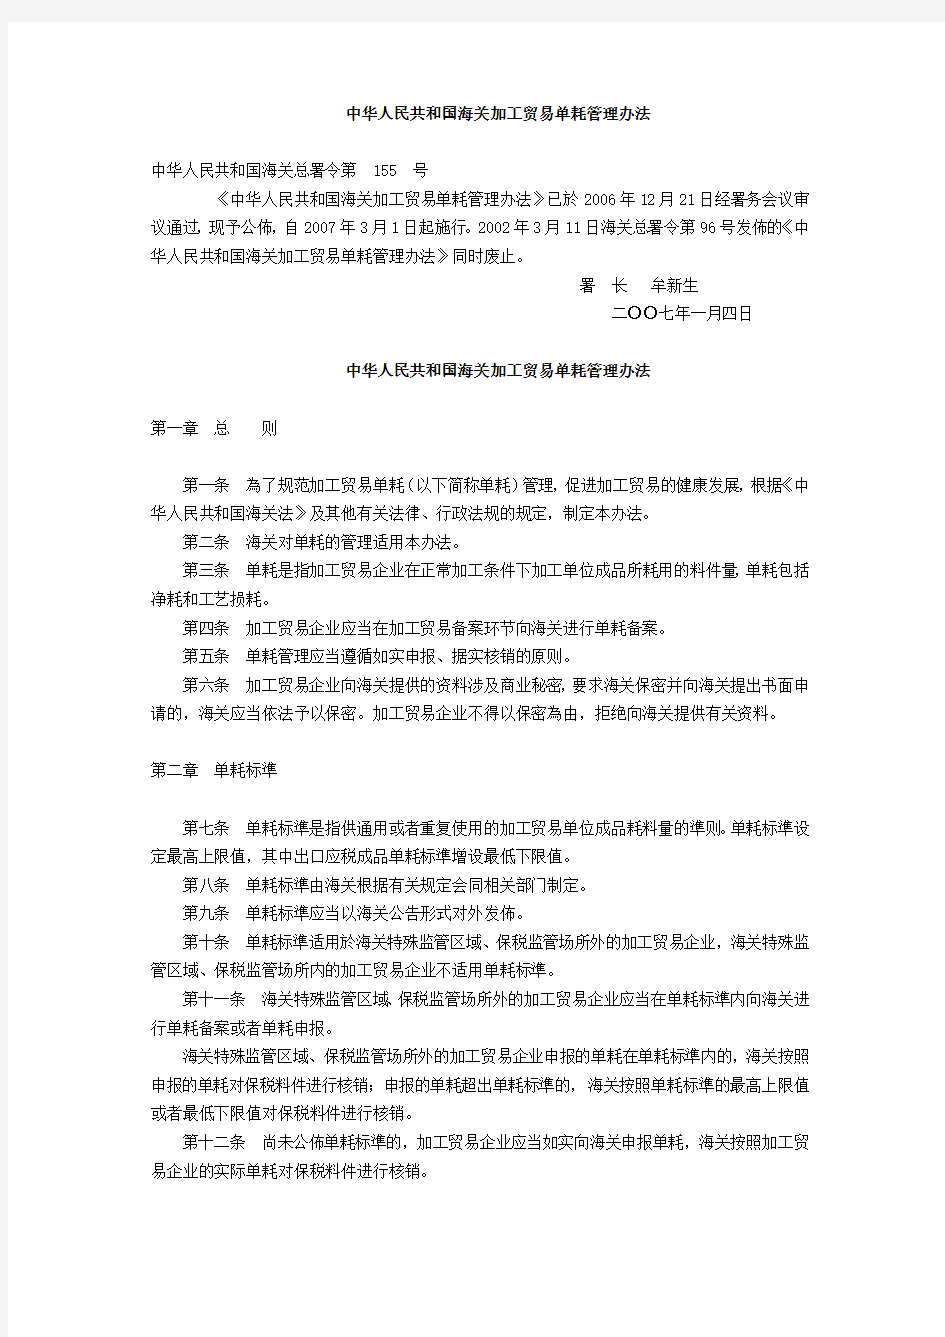 中华人民共和国海关加工贸易单耗管理办法